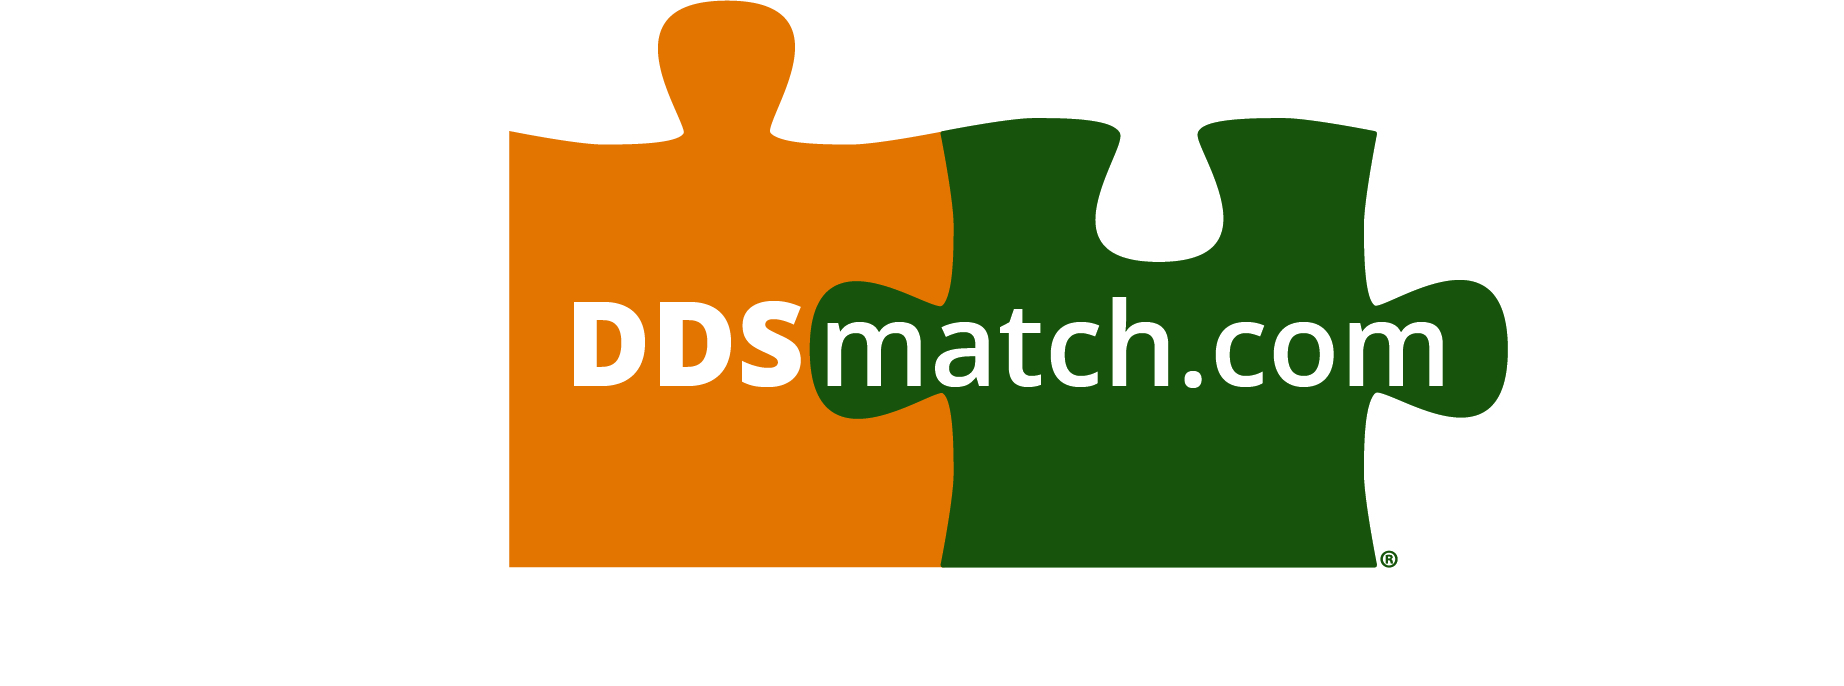 ddsmatch.com - Alain Carles Logo